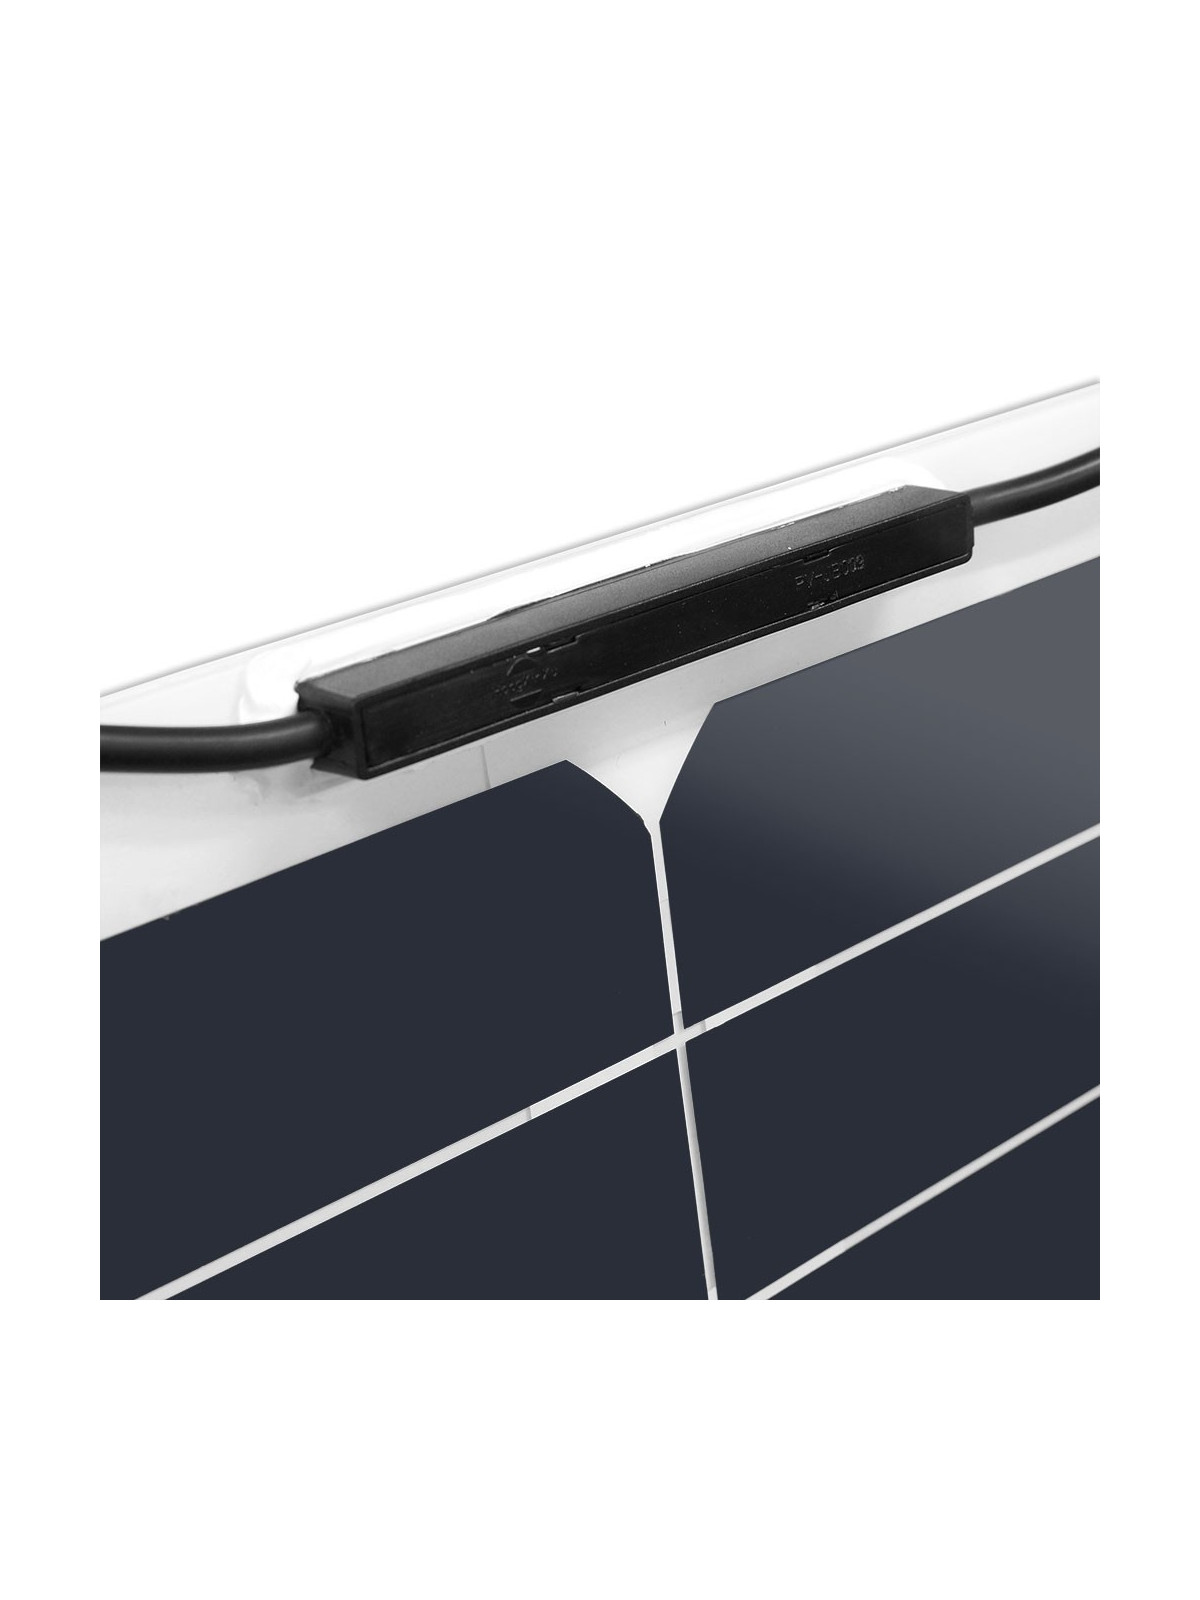 Un panel solar flexible MX FLEX 30 Wc